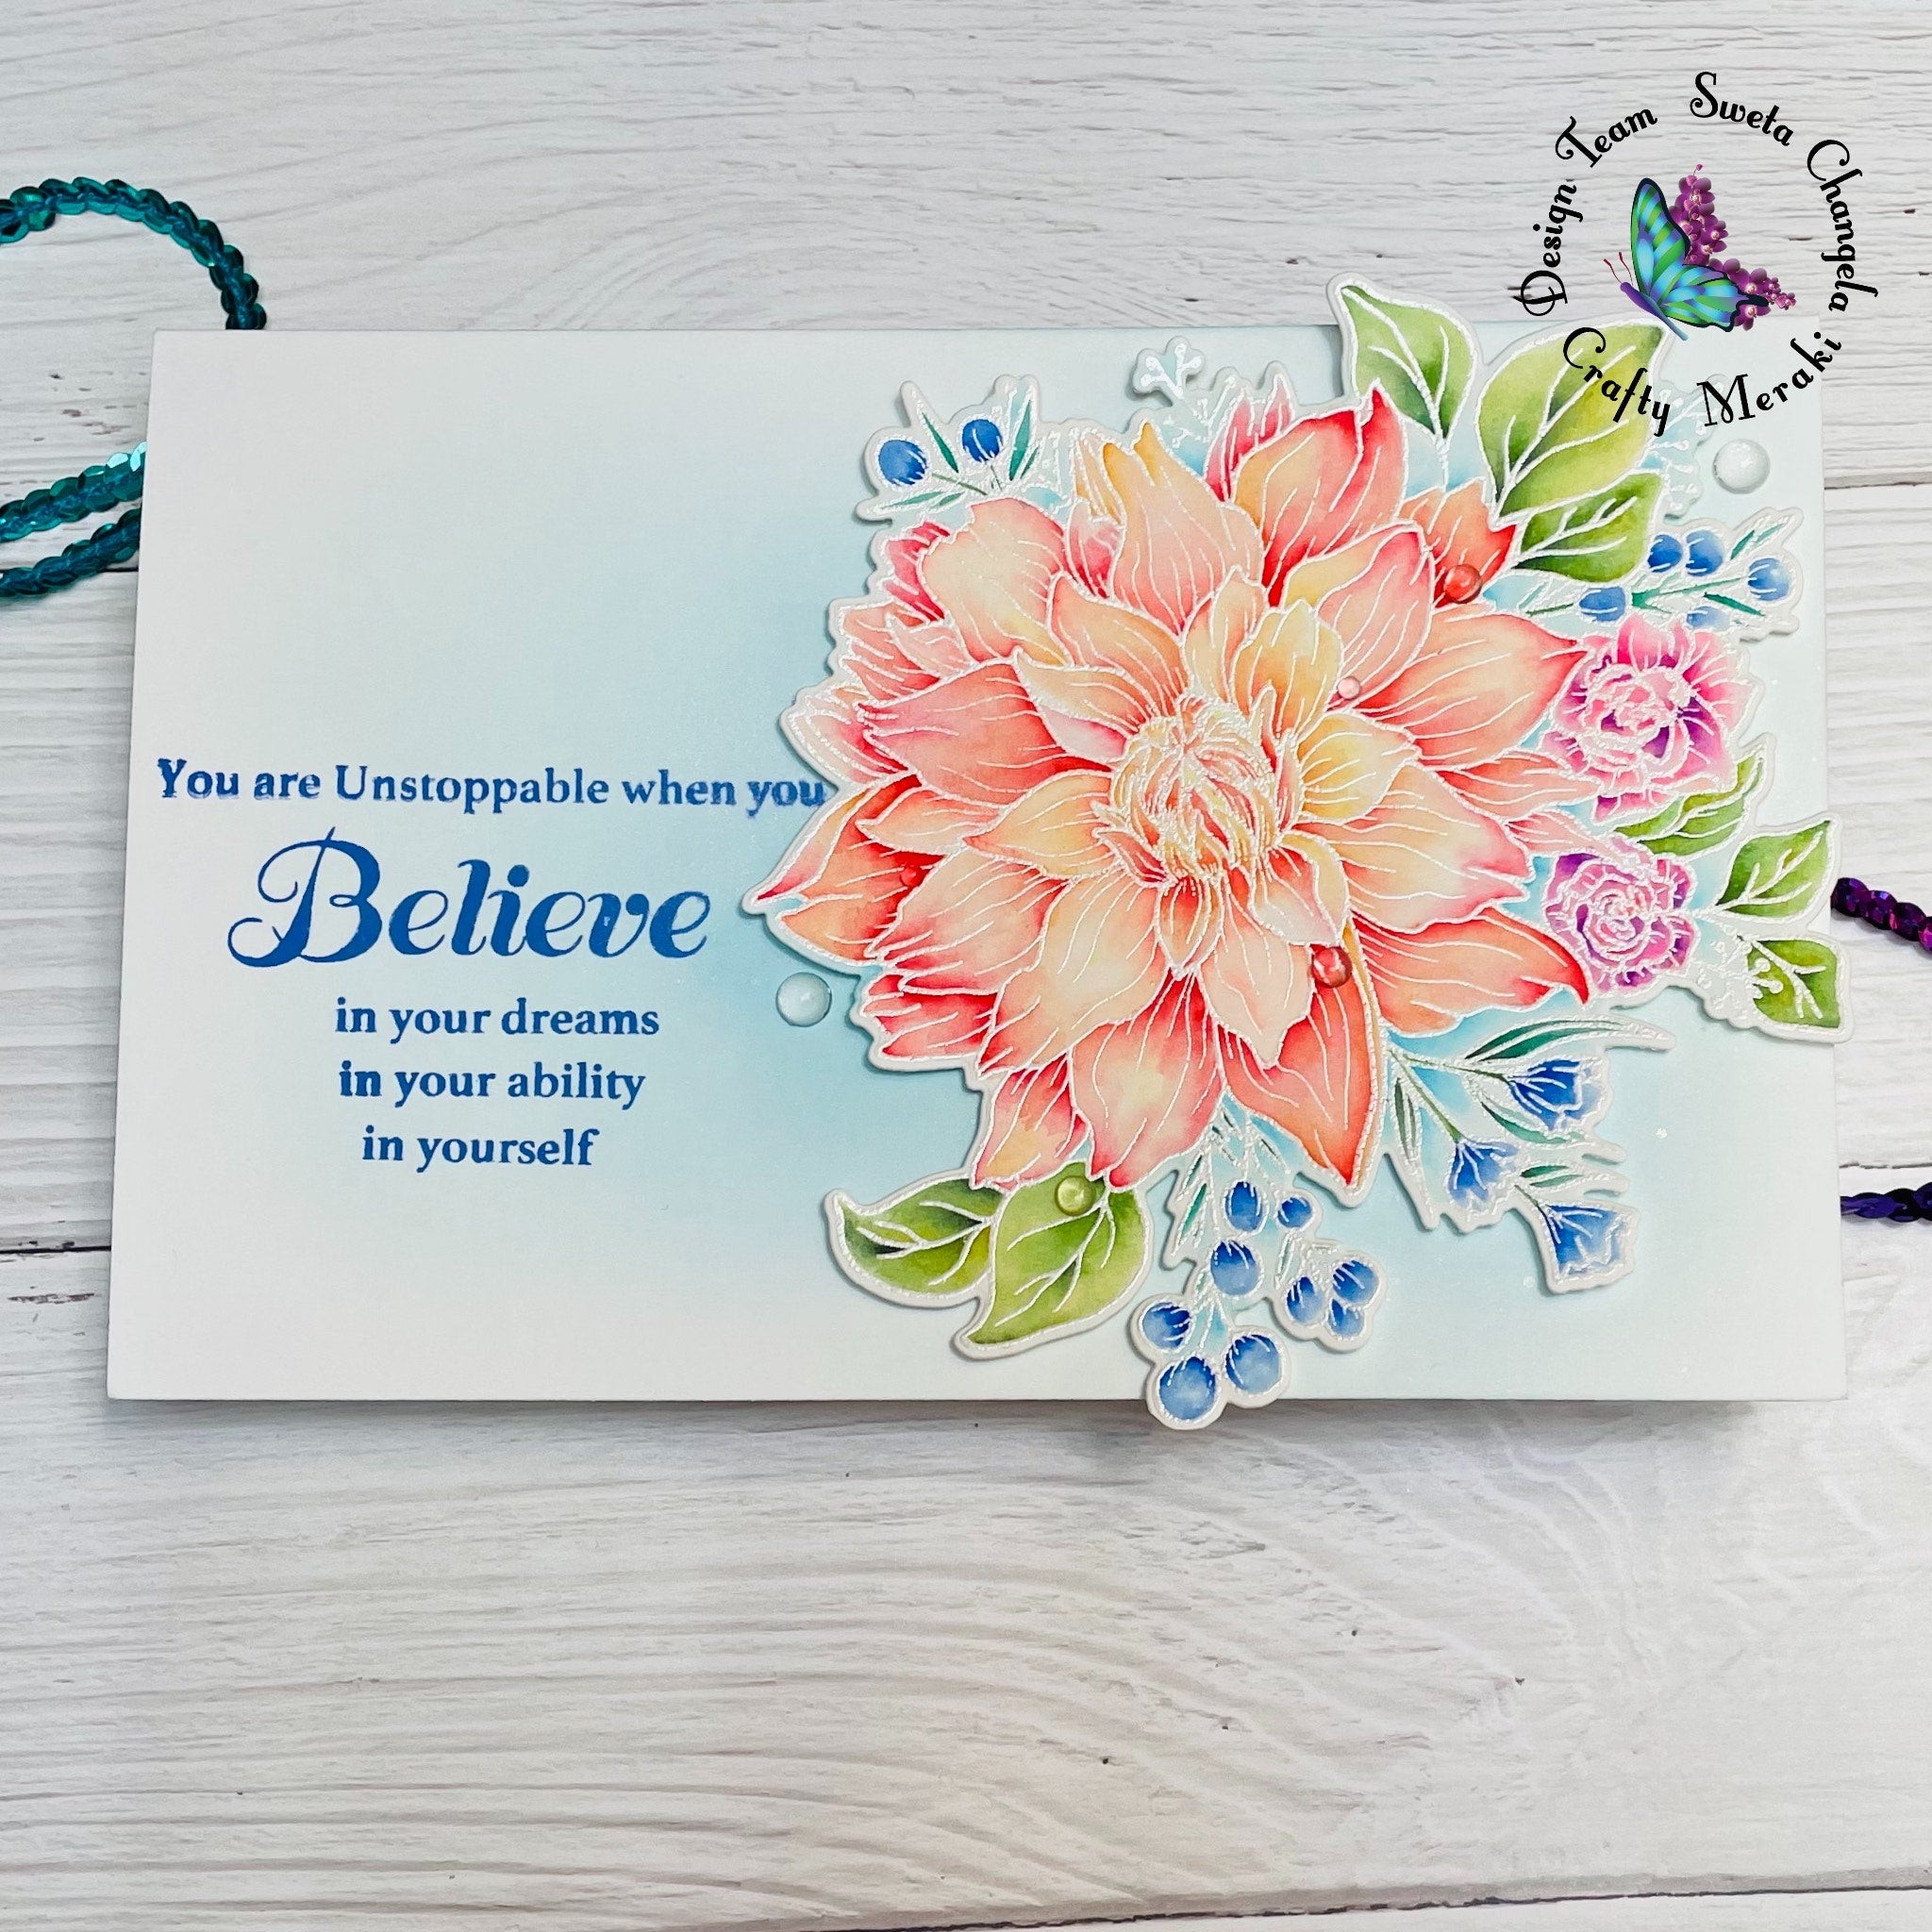 Crafty Meraki Believe in Miracles Stamp set - Crafty Meraki